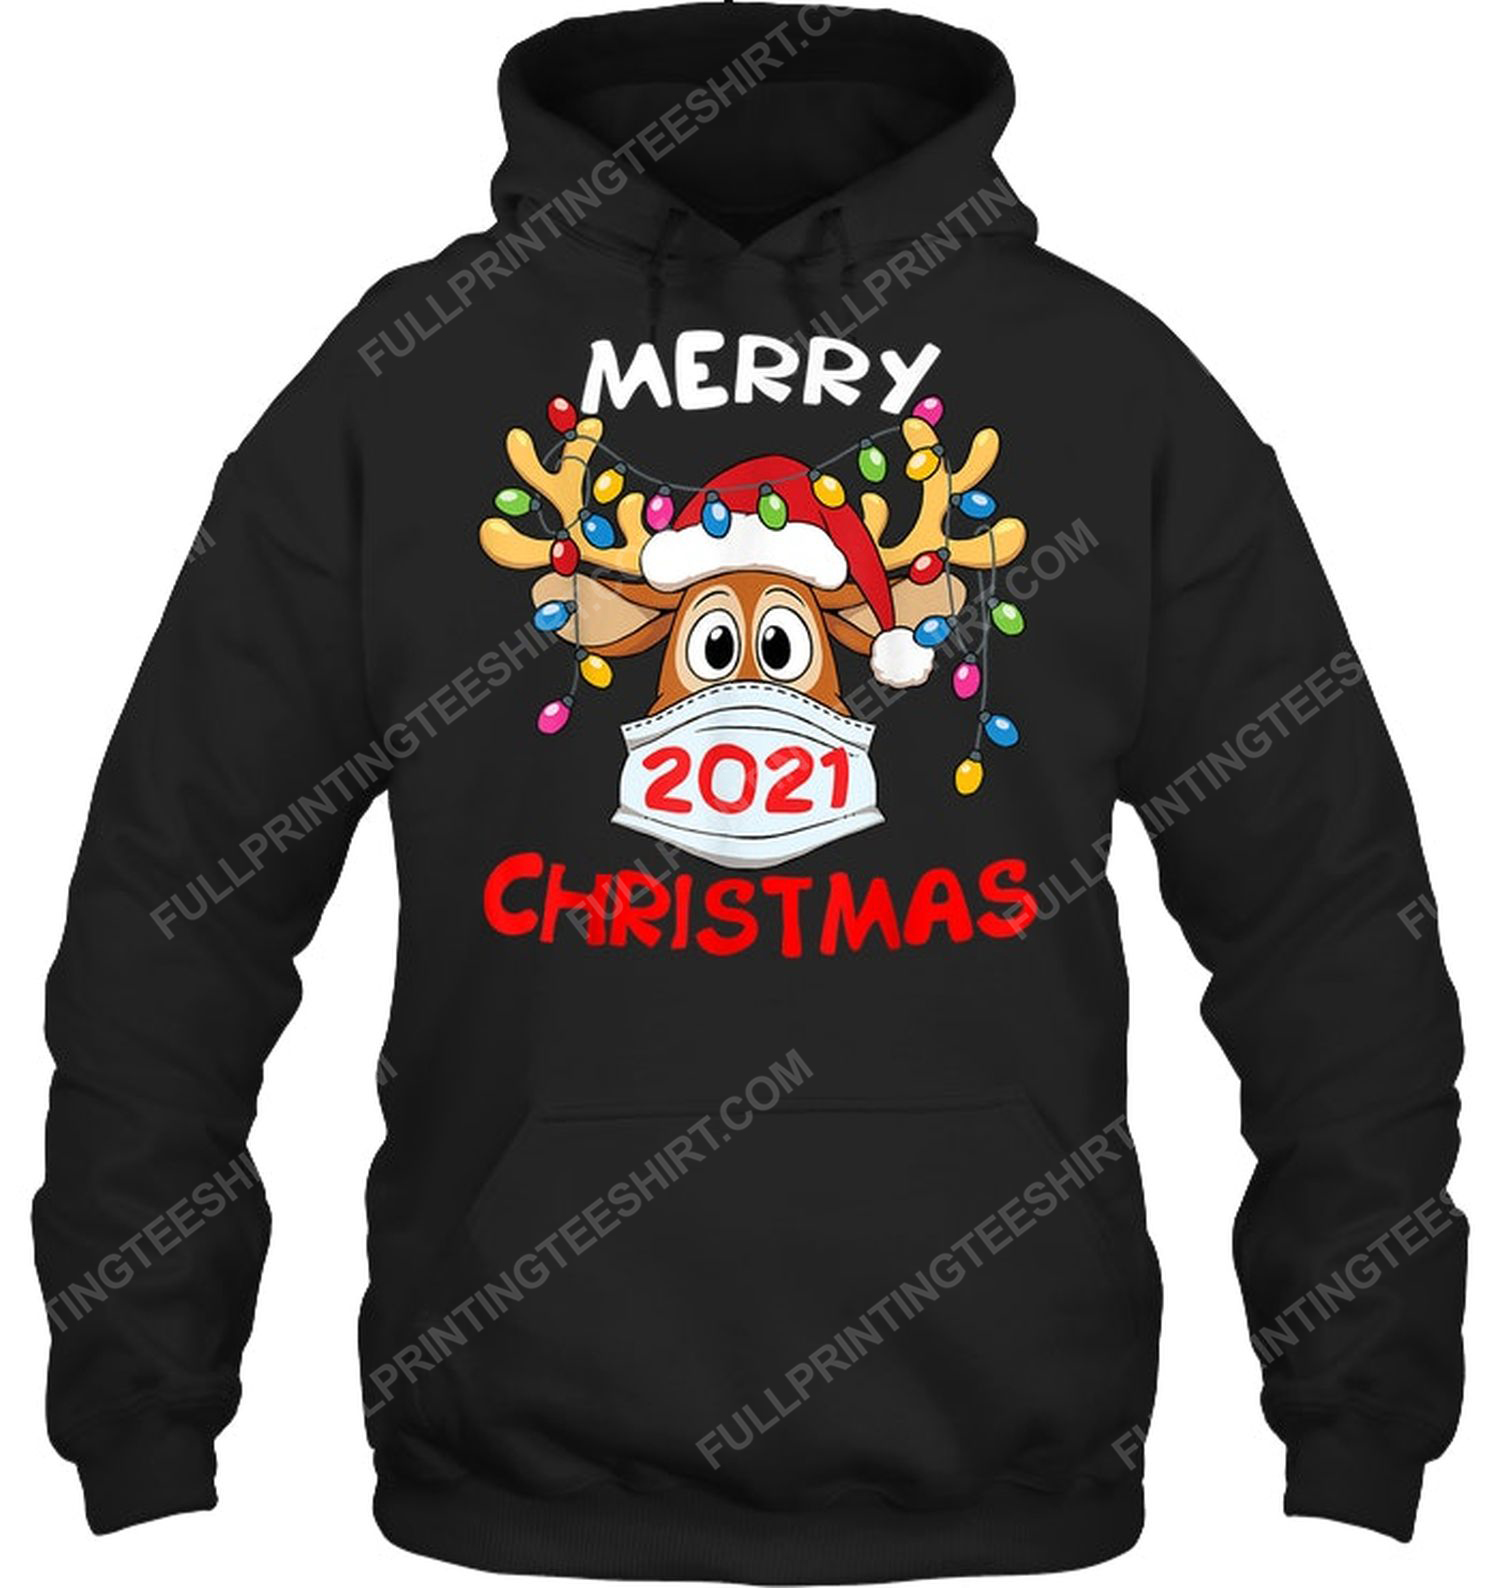 Merry christmas 2021 reindeer in mask hoodie